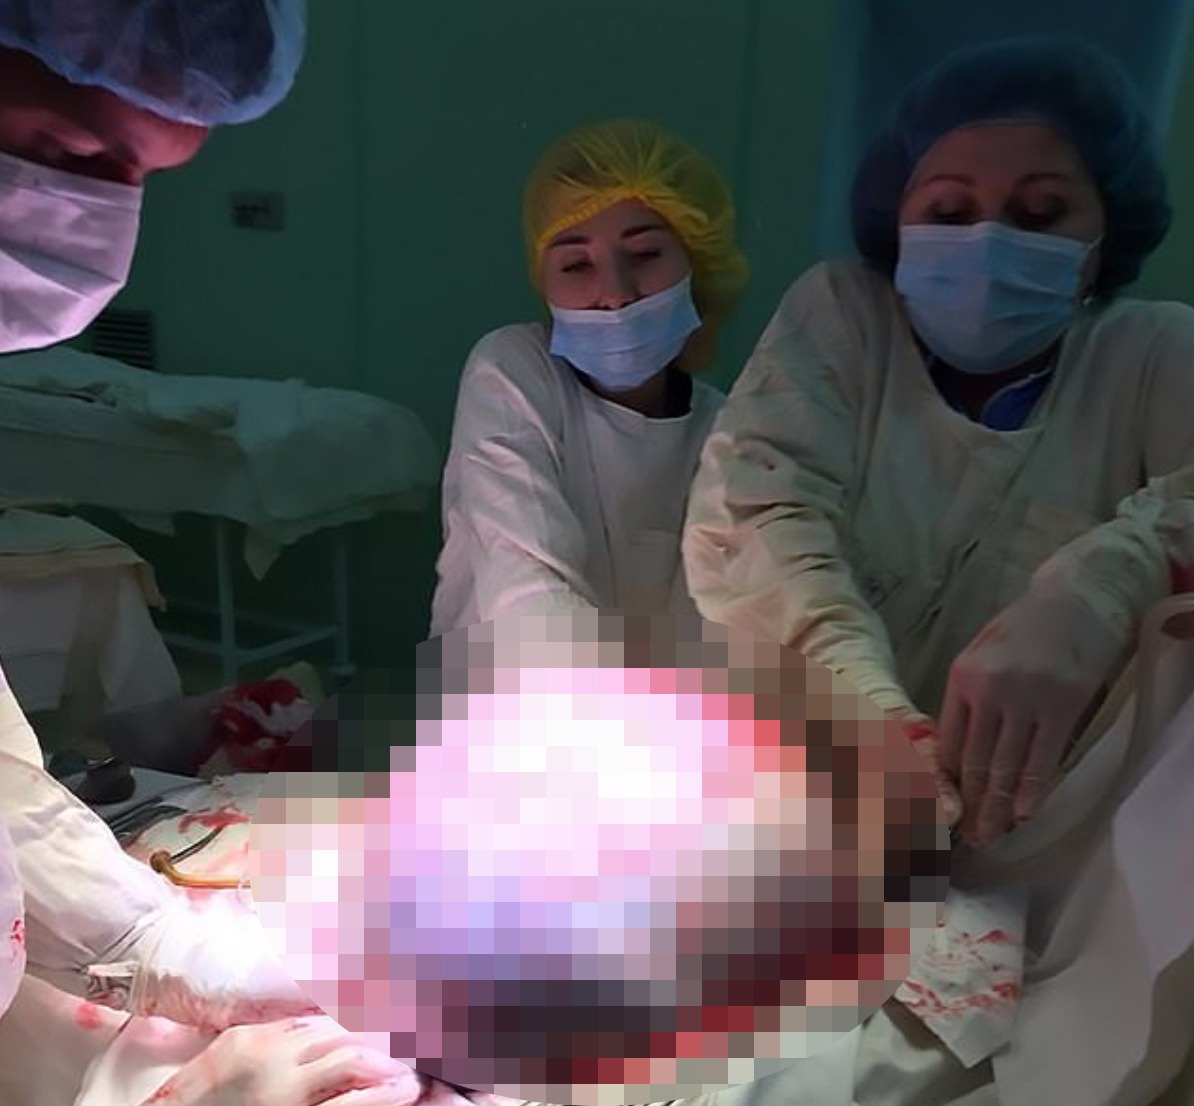 醫生從婦人腹中取出重達25公斤沙灘球大小的卵巢瘤。圖擷自<a href="https://www.dailymail.co.uk/health/article-7398855/Surgeons-Russia-remove-beach-ball-sized-tumour-59-year-old-womans-ovary.html" target="_blank"><font color="#0074ad">dailynews</font></a>